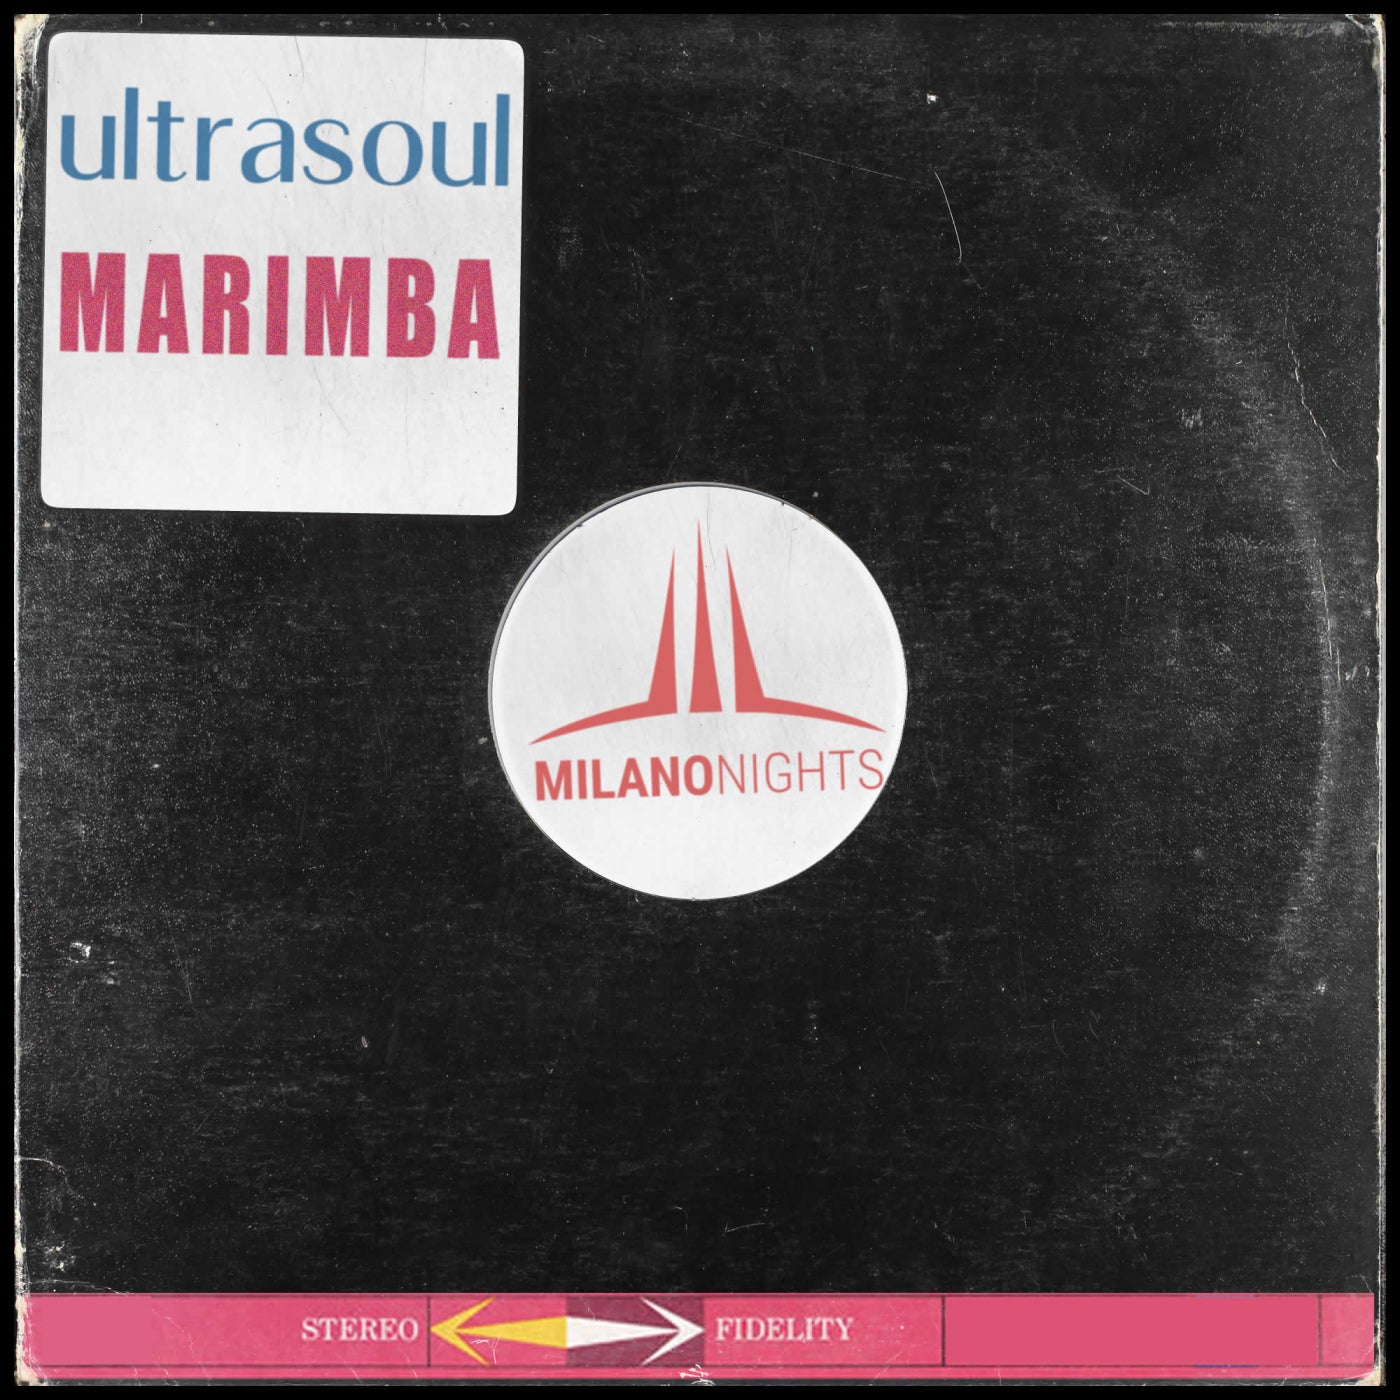 Ultrasoul - Marimba (JL & Afterman Mix) [MIL025]